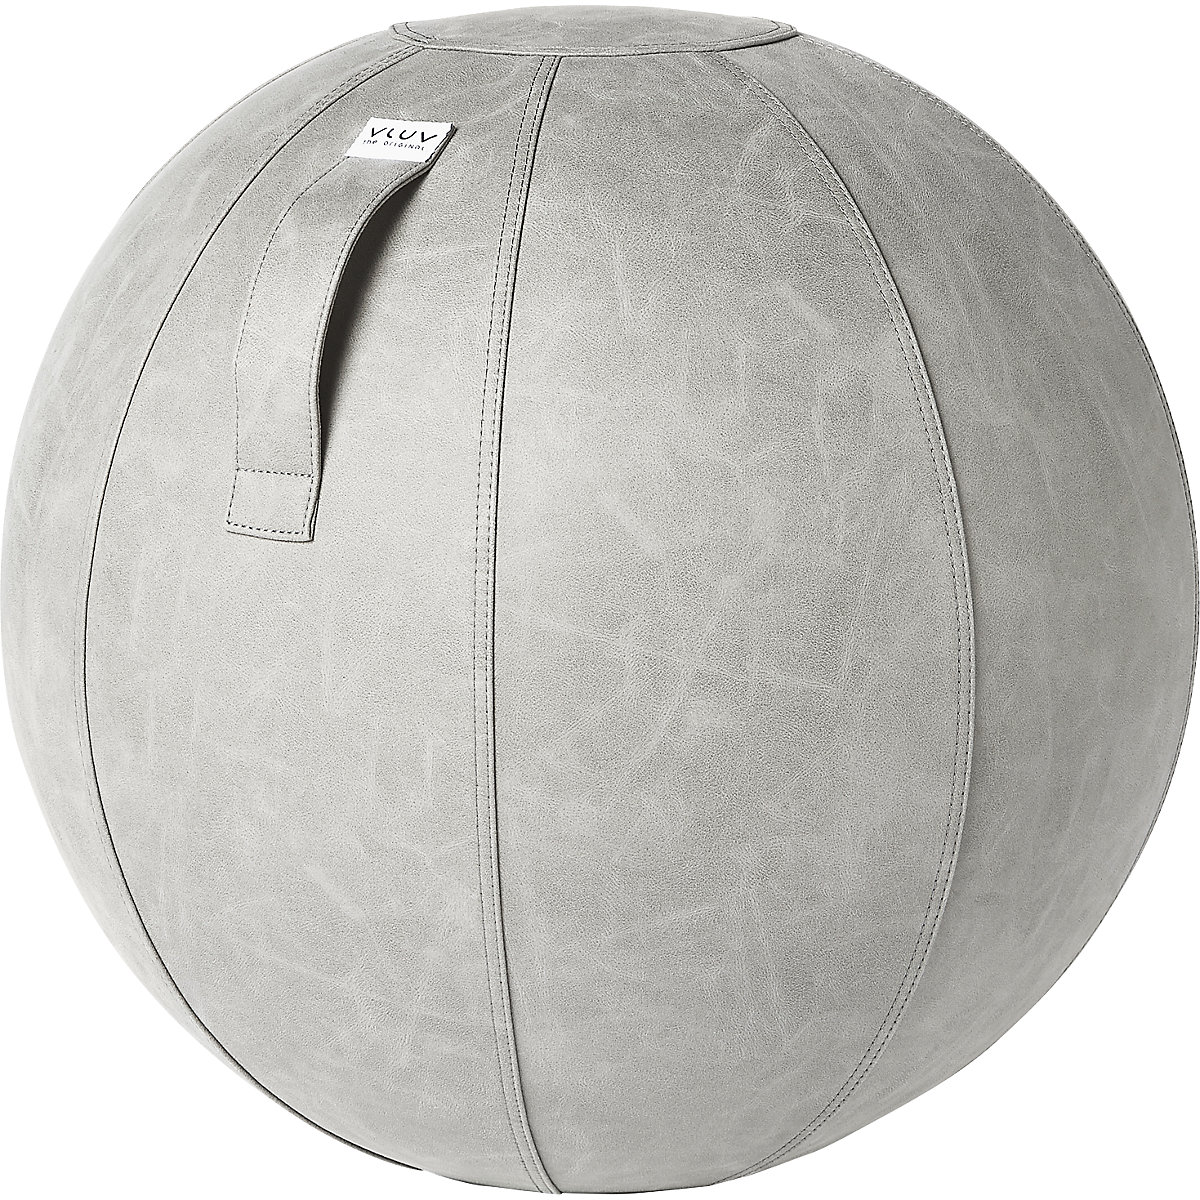 VEGA Swiss ball – VLUV, vegan vinyl, 600 – 650 mm, cement-8